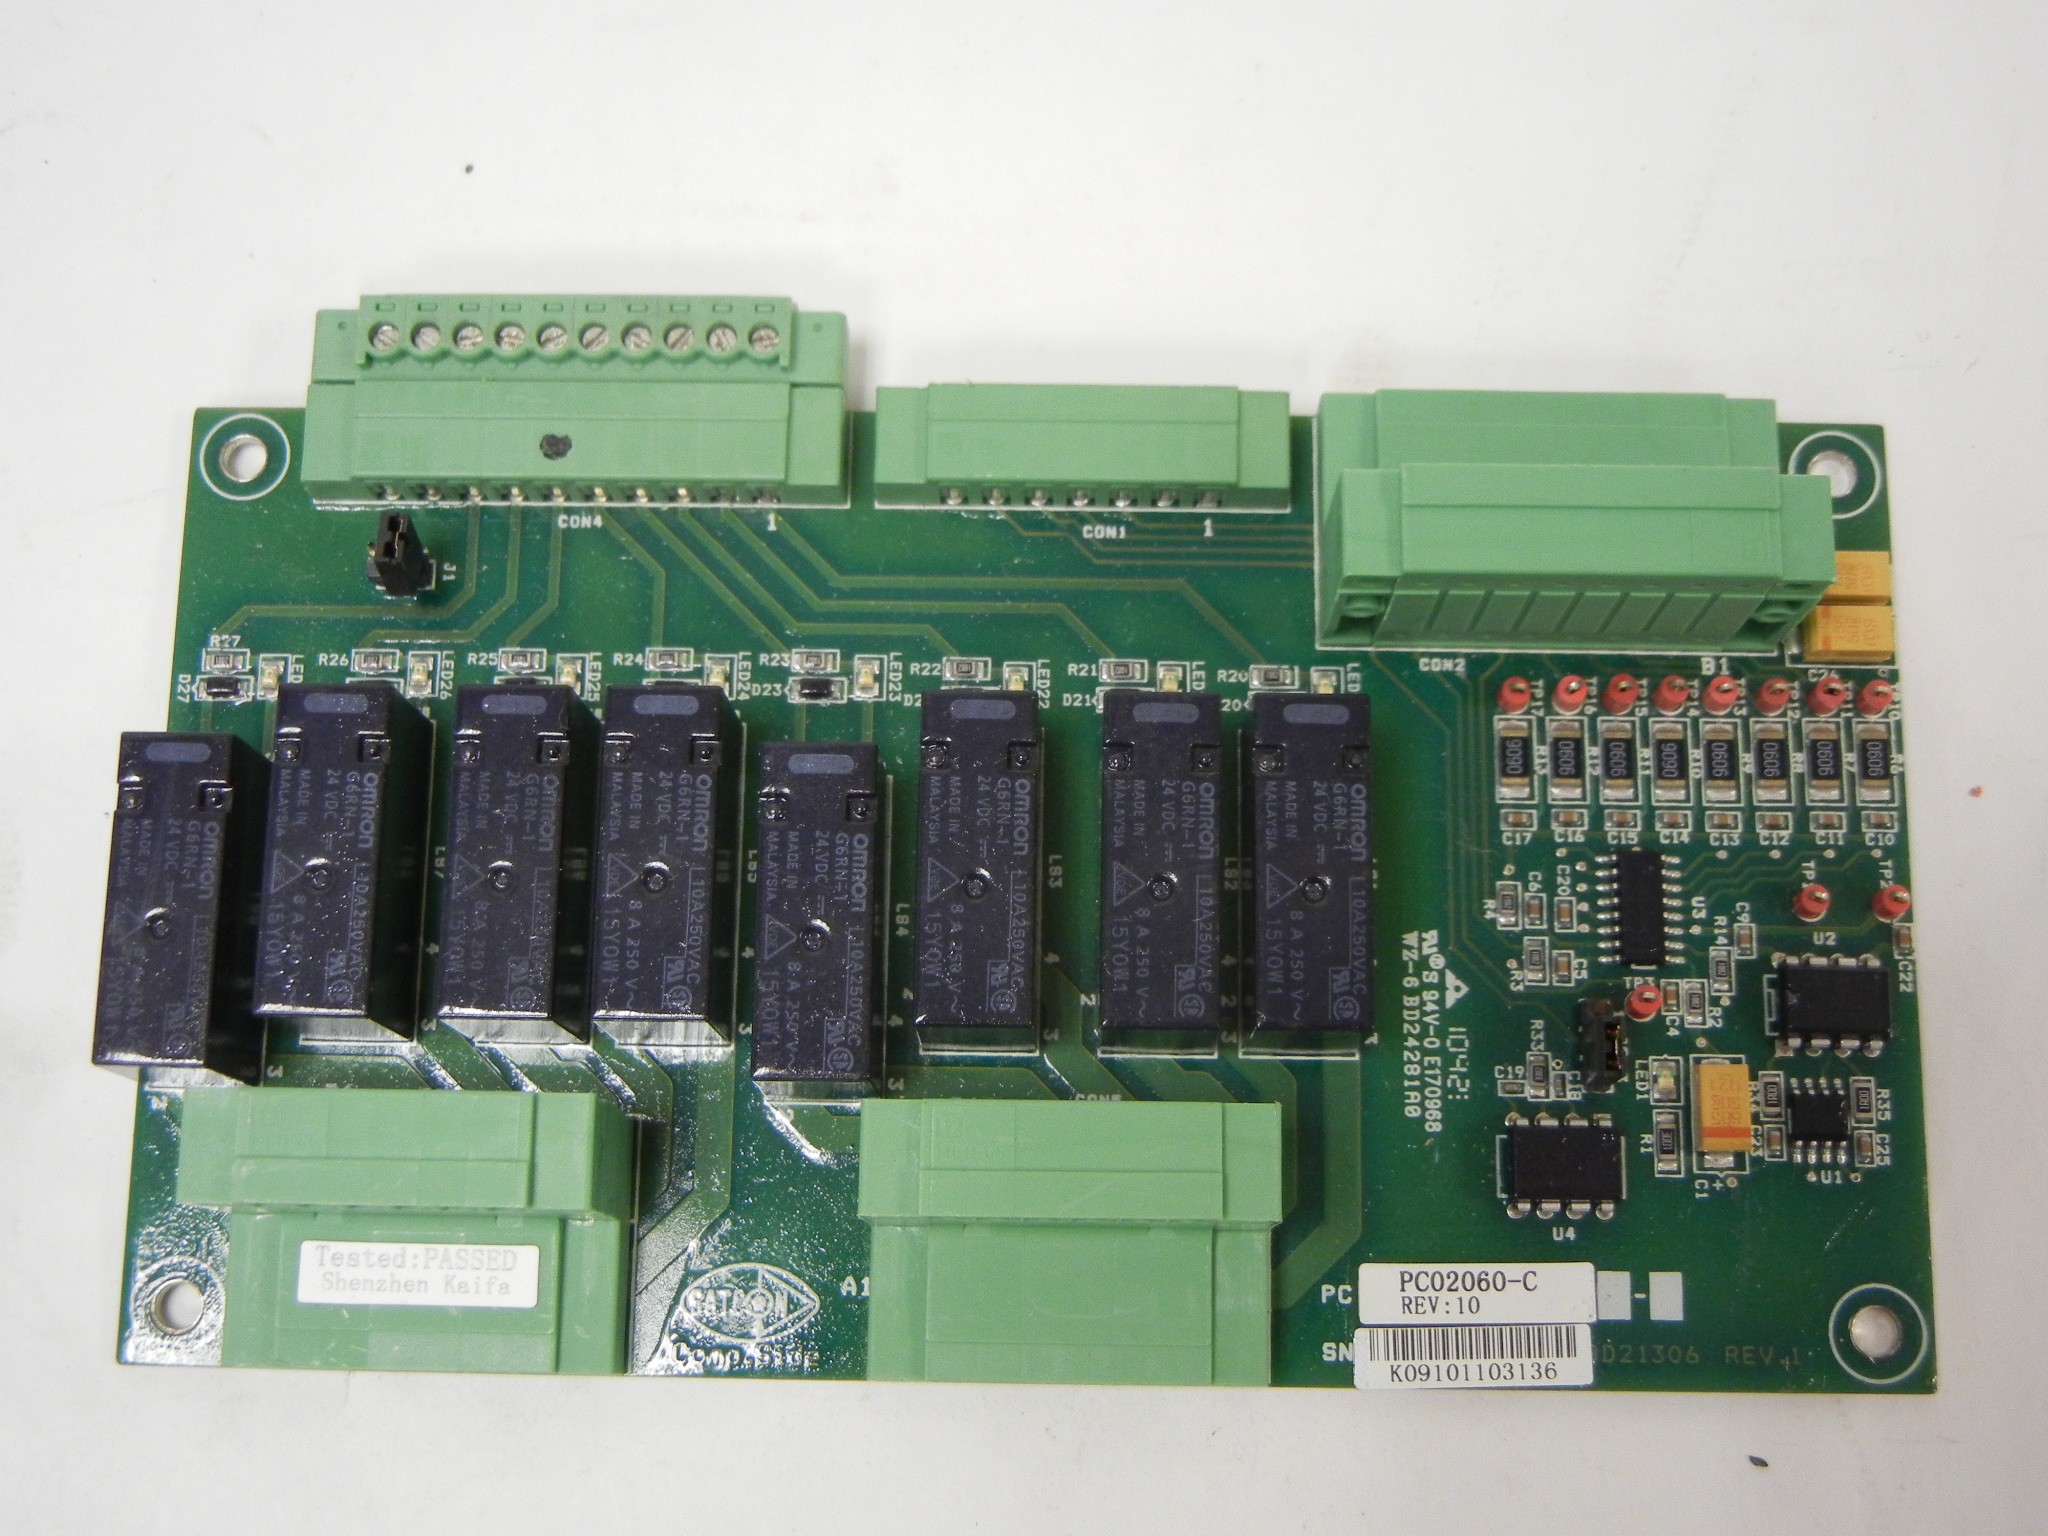 Satcon PC 02060-C / PC02060 Rev C / PC02060-C Power Control Board